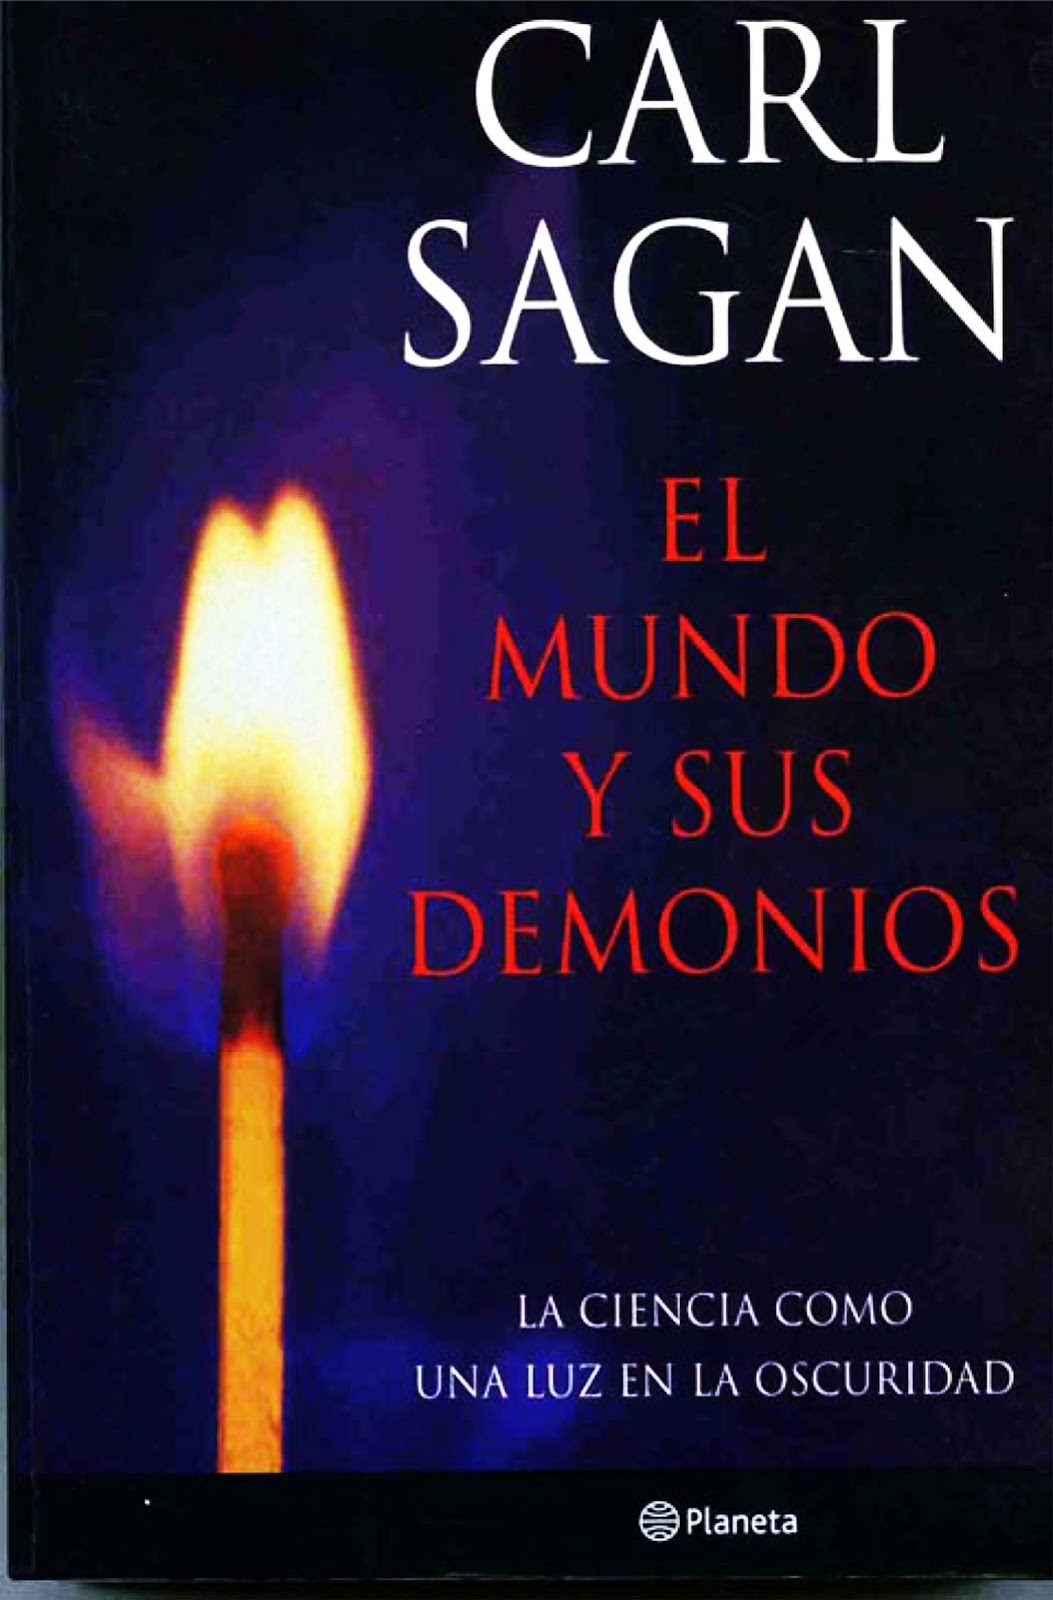 carl_sagan_-_mundo_demonios-1.jpg